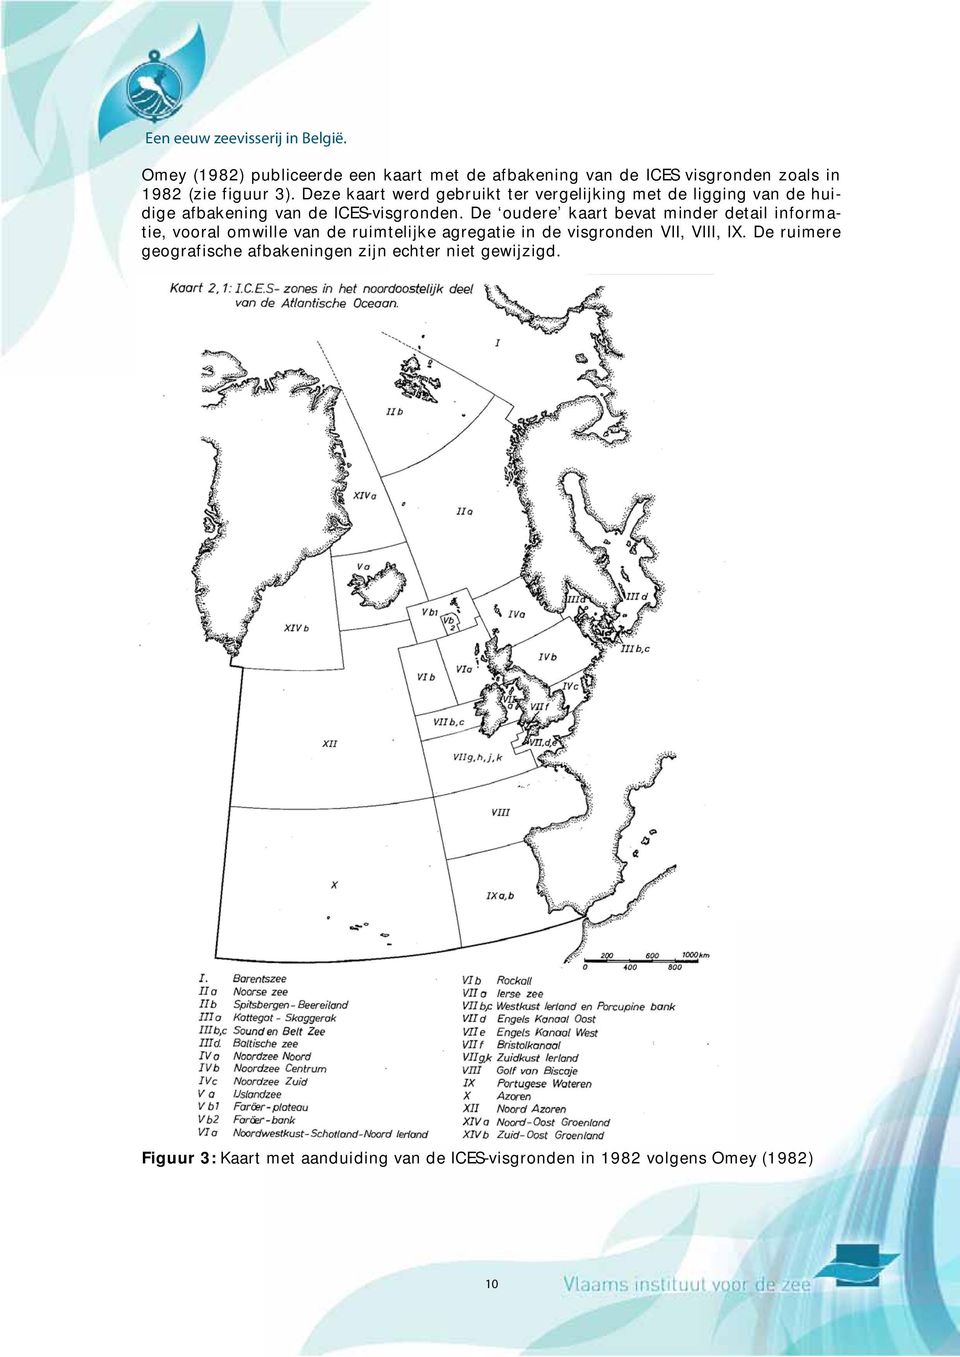 De oudere kaart bevat minder detail informatie, vooral omwille van de ruimtelijke agregatie in de visgronden VII, VIII,